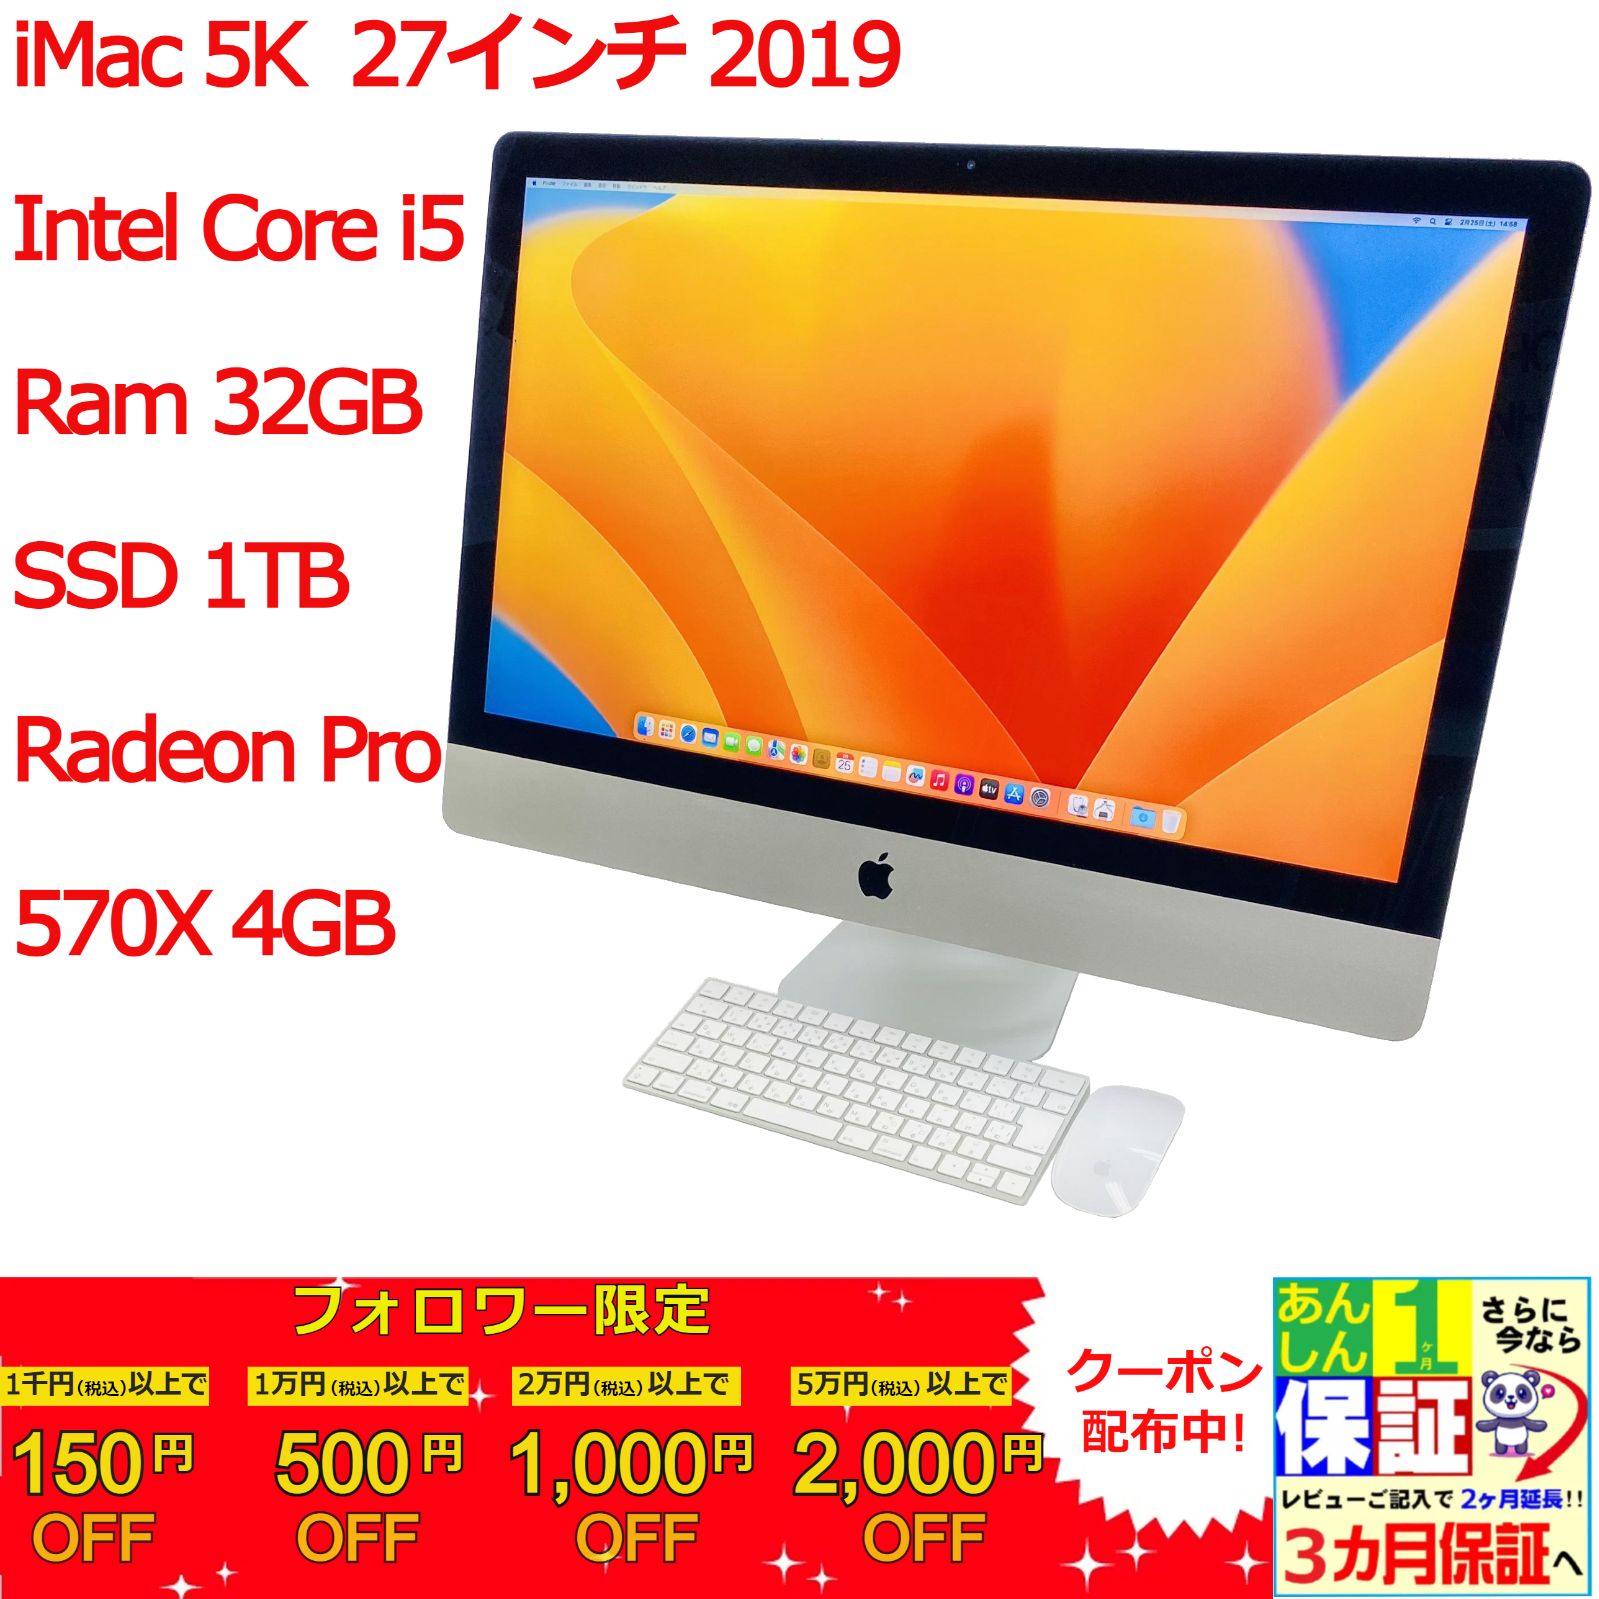 iMac 5K 27インチ 2019 Intel Core i5/Ram 32GB/SSD 1TB/ Radeon Pro 570X 4GB